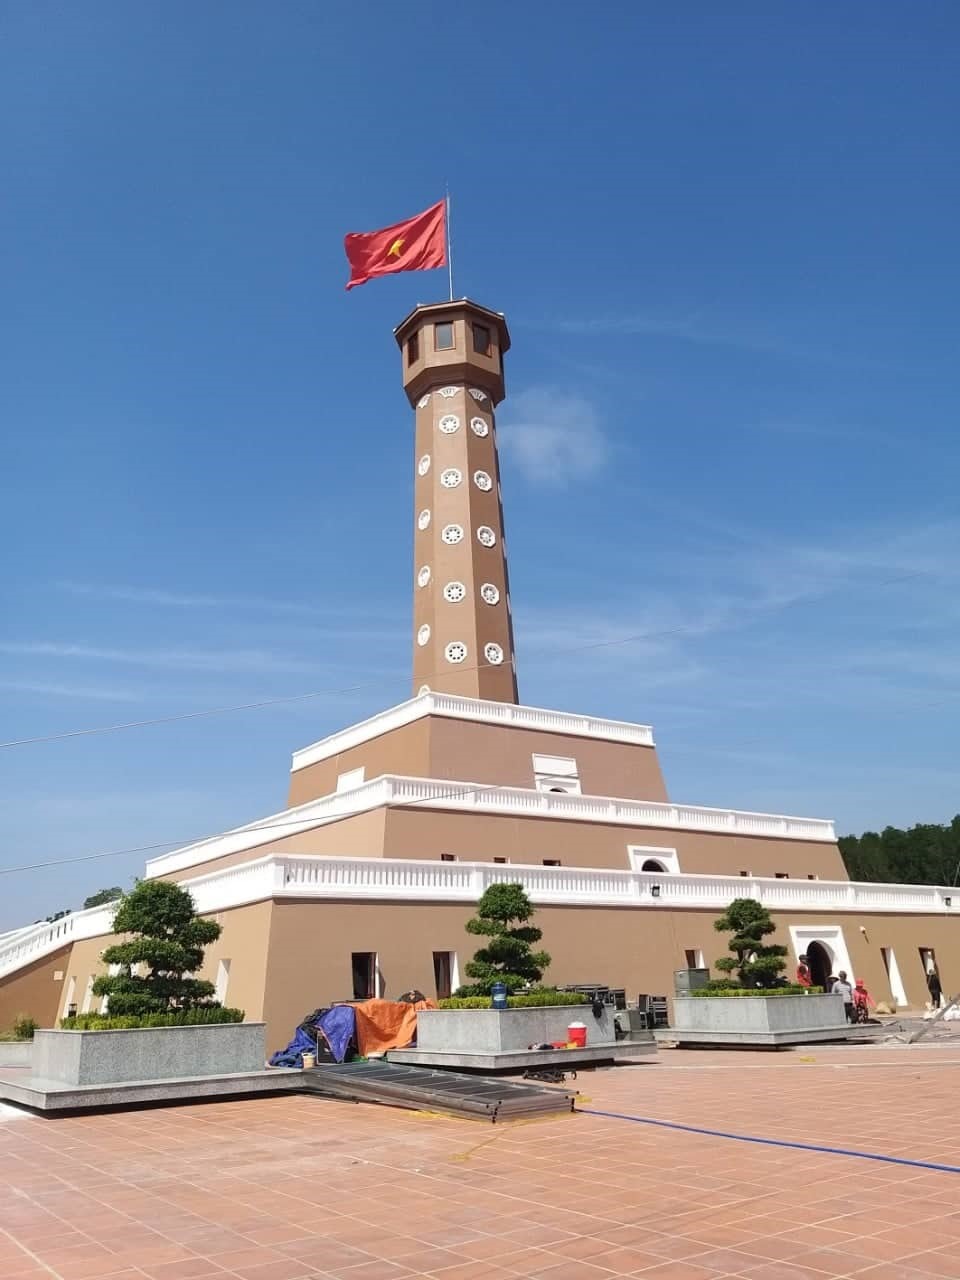 Cột Cở Hà Nội tại Mũi Cà Mau gồm 3 tầng đế và thân cột cờ. Tổng chiều cao công trình, tính cả cán cờ, là hơn 41 mét. (ảnh Nhật Hồ)